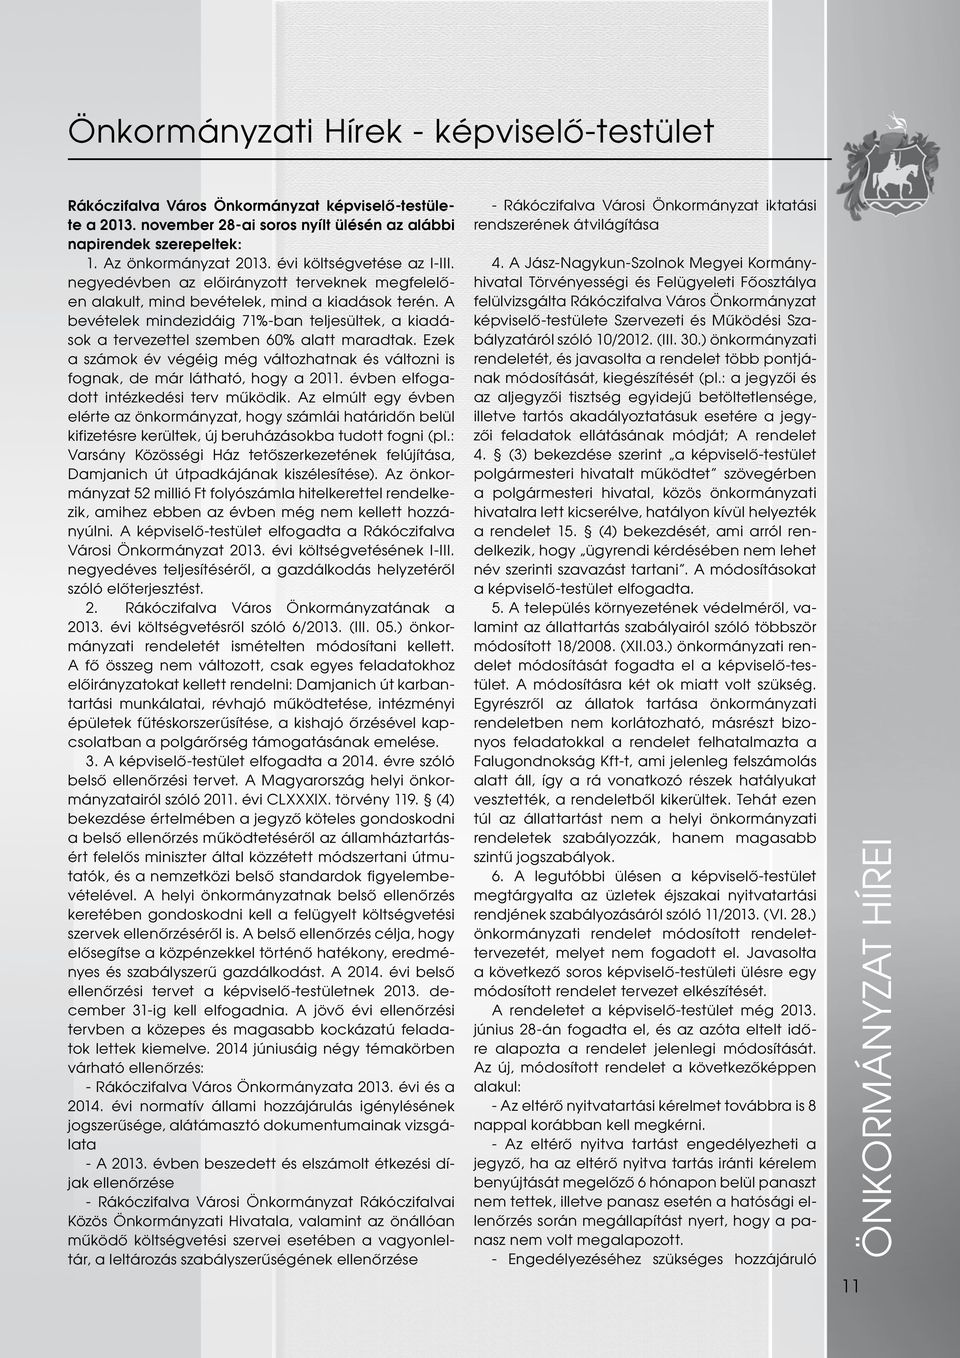 10/2012. (III. 30.) önkormányzati rendeletét, és javasolta a rendelet több pontjának módosítását, kiegészítését (pl.